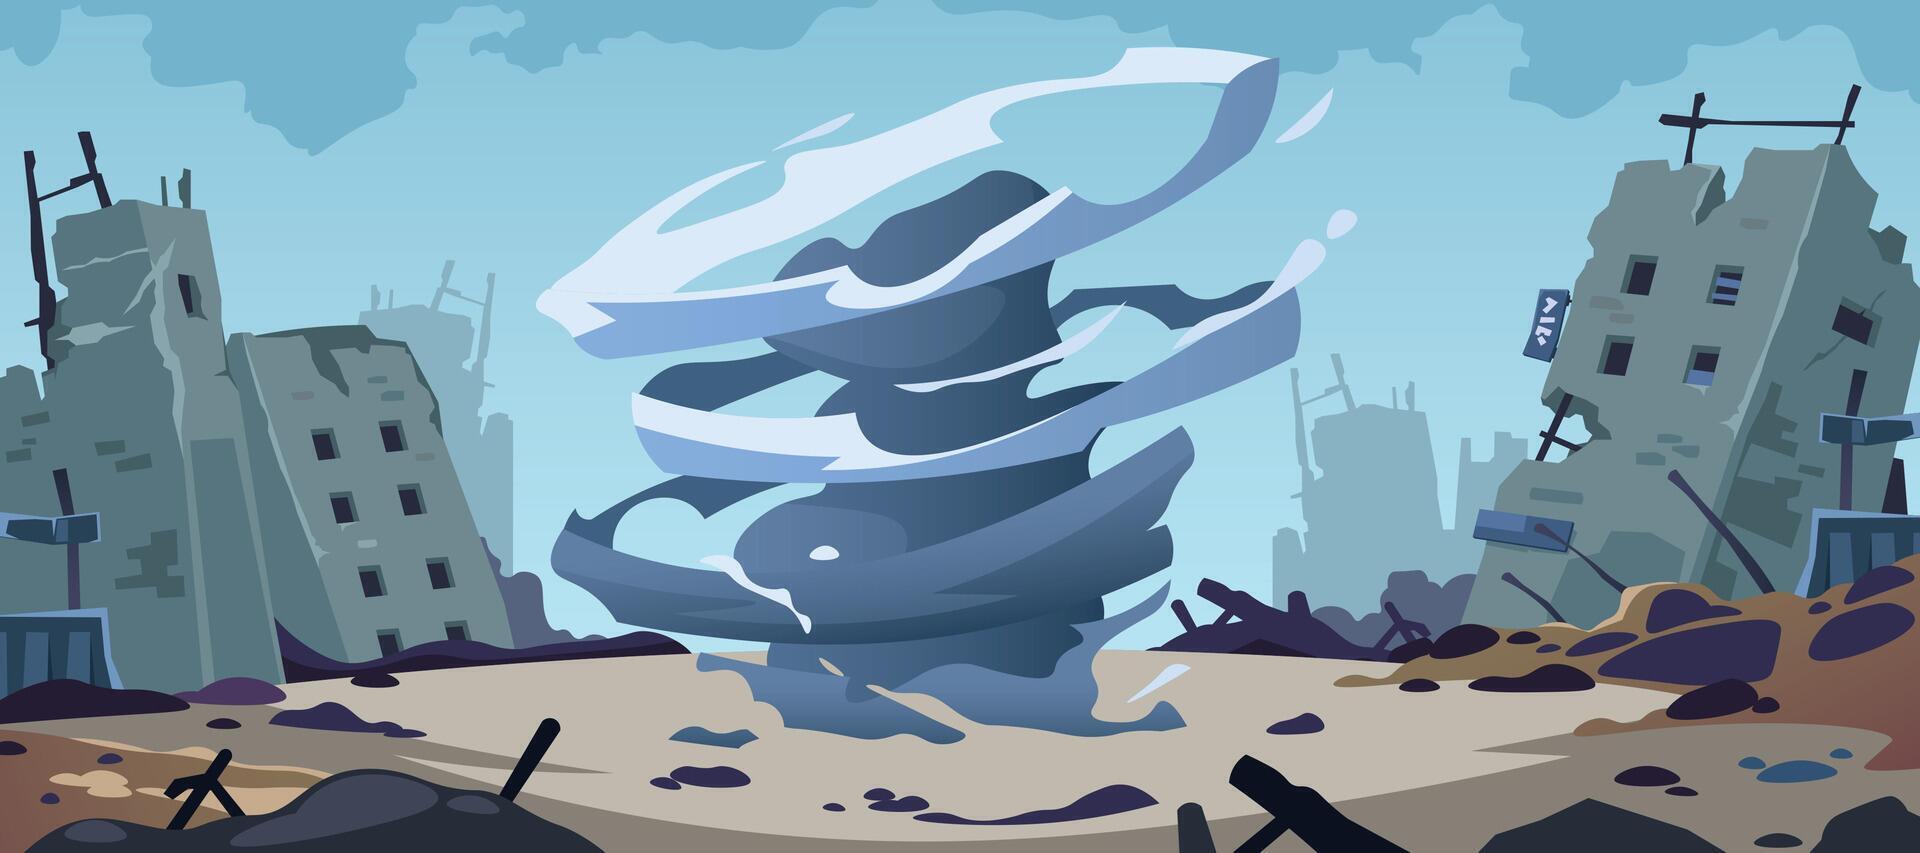 Tornado Katastrophe Hintergrund. Karikatur Hurrikan Sturm Zerstörung, Gebäude zerstört durch Zyklon, Tornado stürmisch Katastrophe Konzept. Vektor Illustration